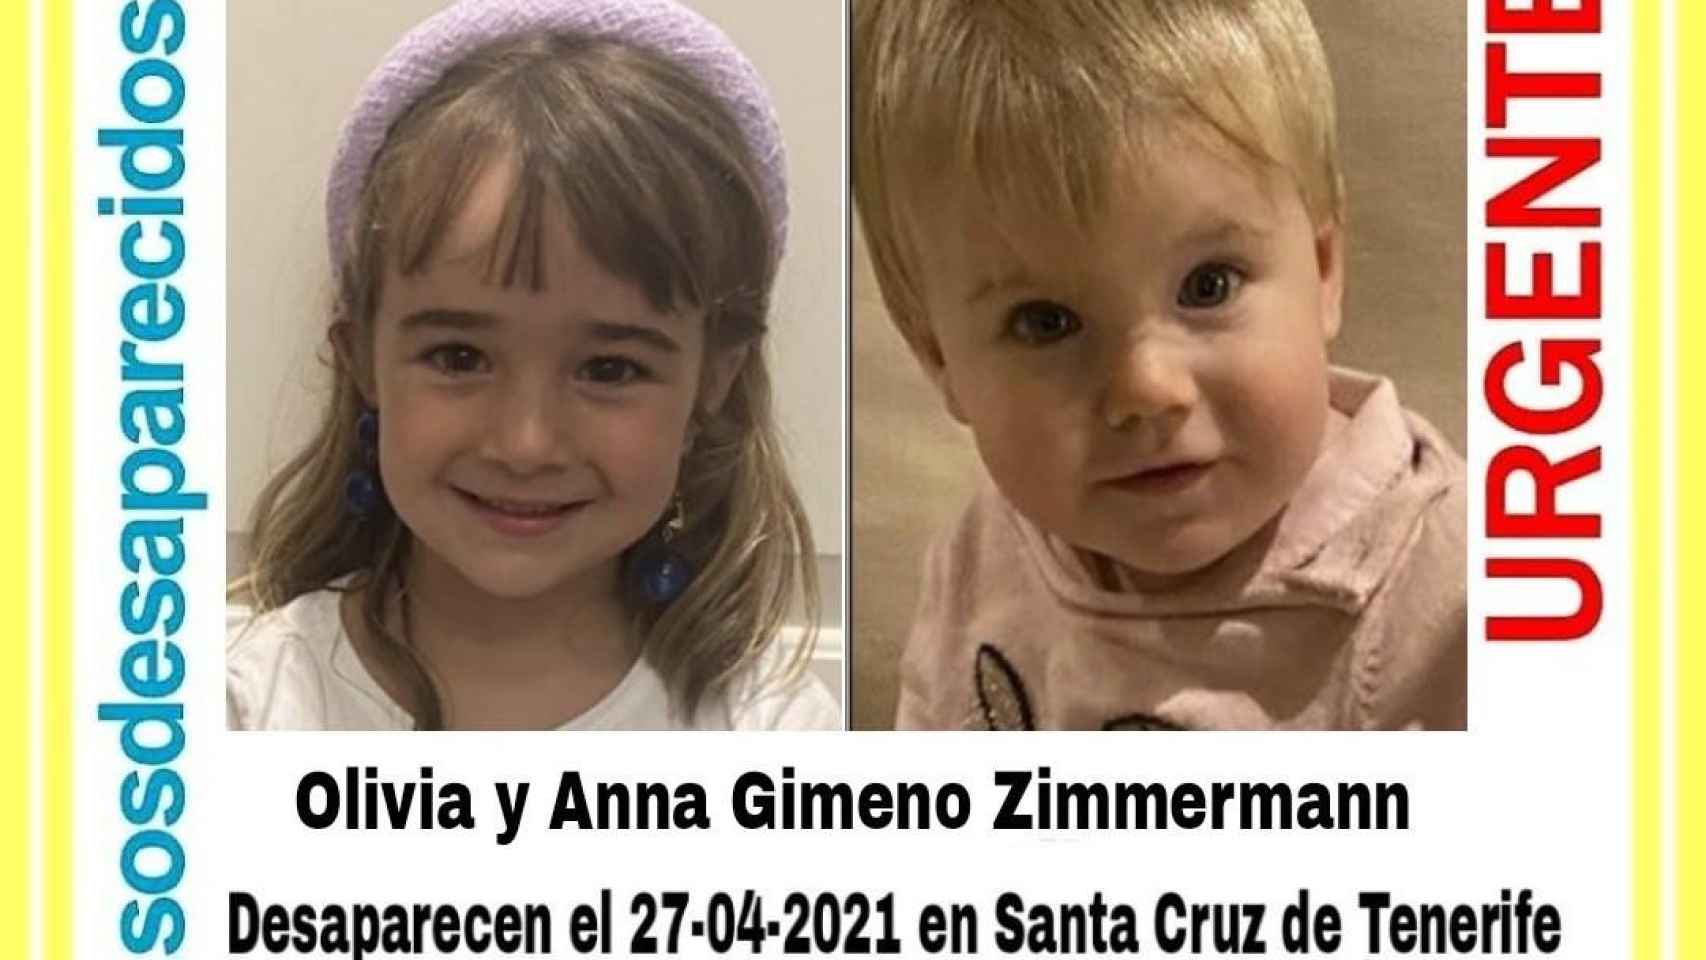 Sigue la búsqueda de Anna y Olivia, dos niñas desaparecidas en Tenerife